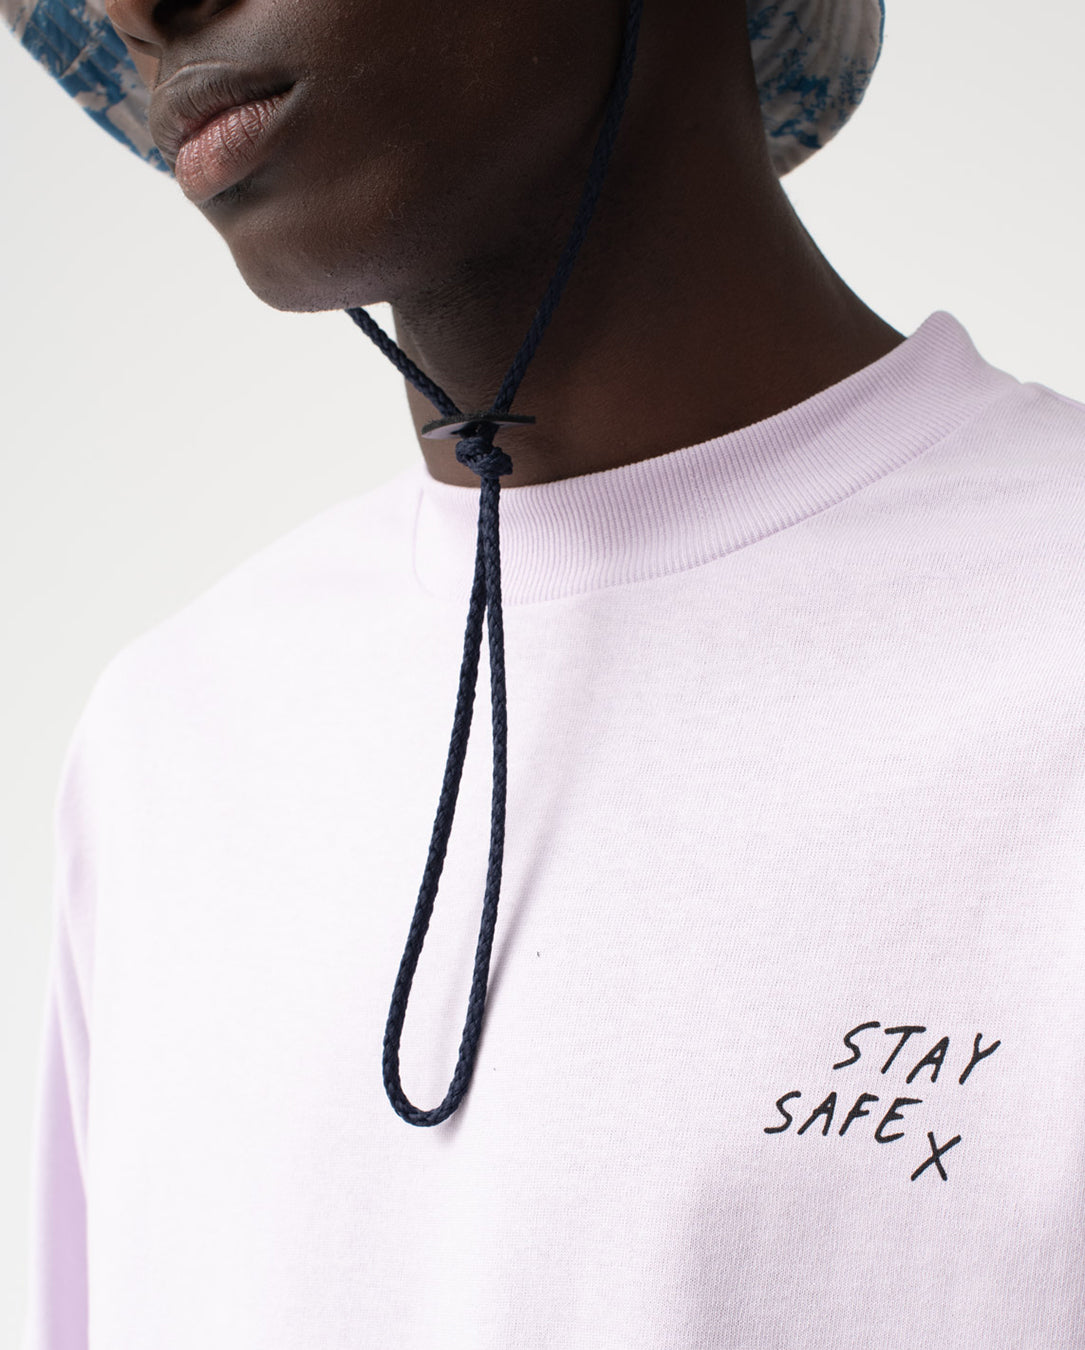 STAY SAFE (lavender)